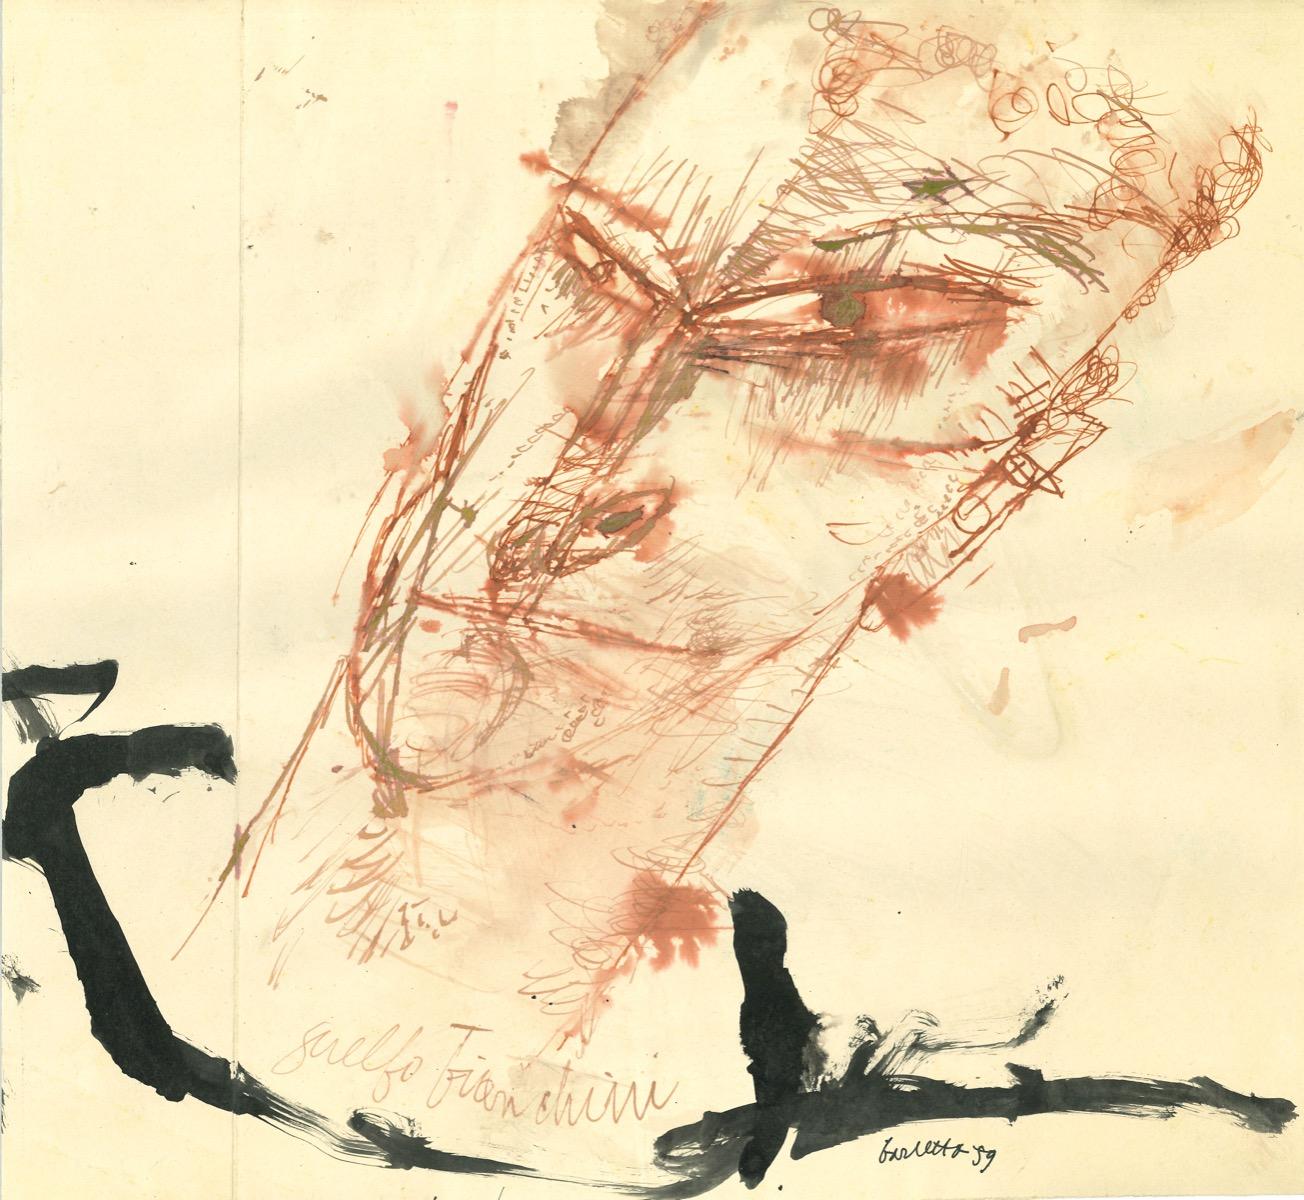 Ritratto di Guelfo Bianchini ist eine Feder- und Aquarellzeichnung auf Papier von Sergio Barletta aus dem Jahr 1959.

Am unteren Rand handsigniert und datiert.

In sehr gutem Zustand.

Sergio Barletta (1934) ist ein italienischer Karikaturist und